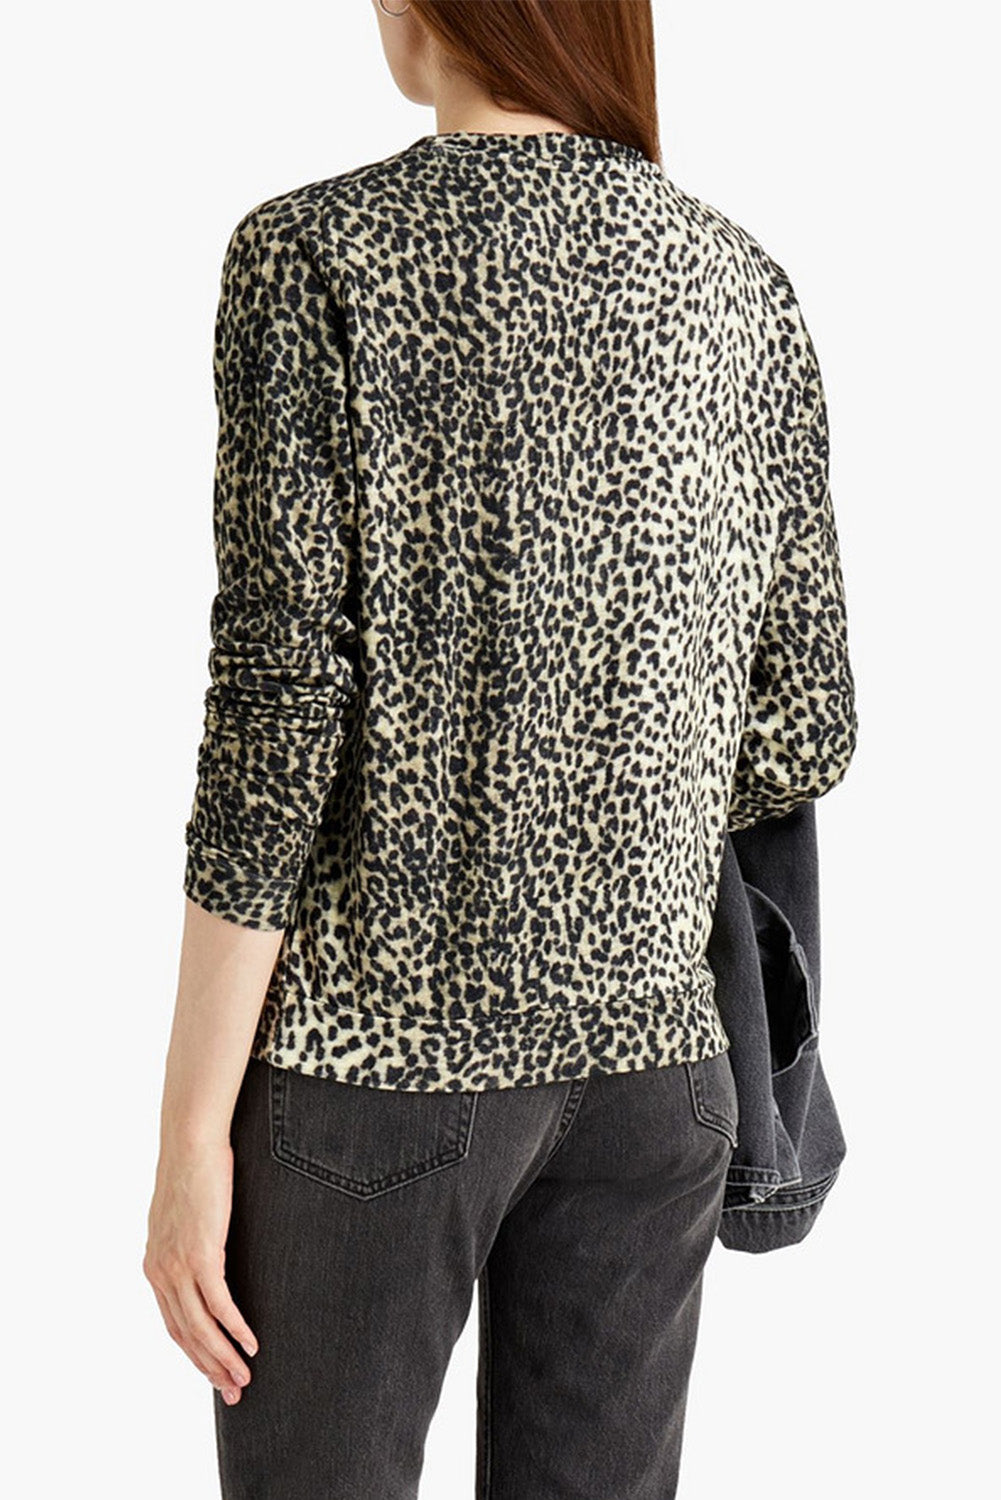 Leopard Boyfriend Crew Neck Leopard Sweatshirt Sweatshirts & Hoodies JT's Designer Fashion